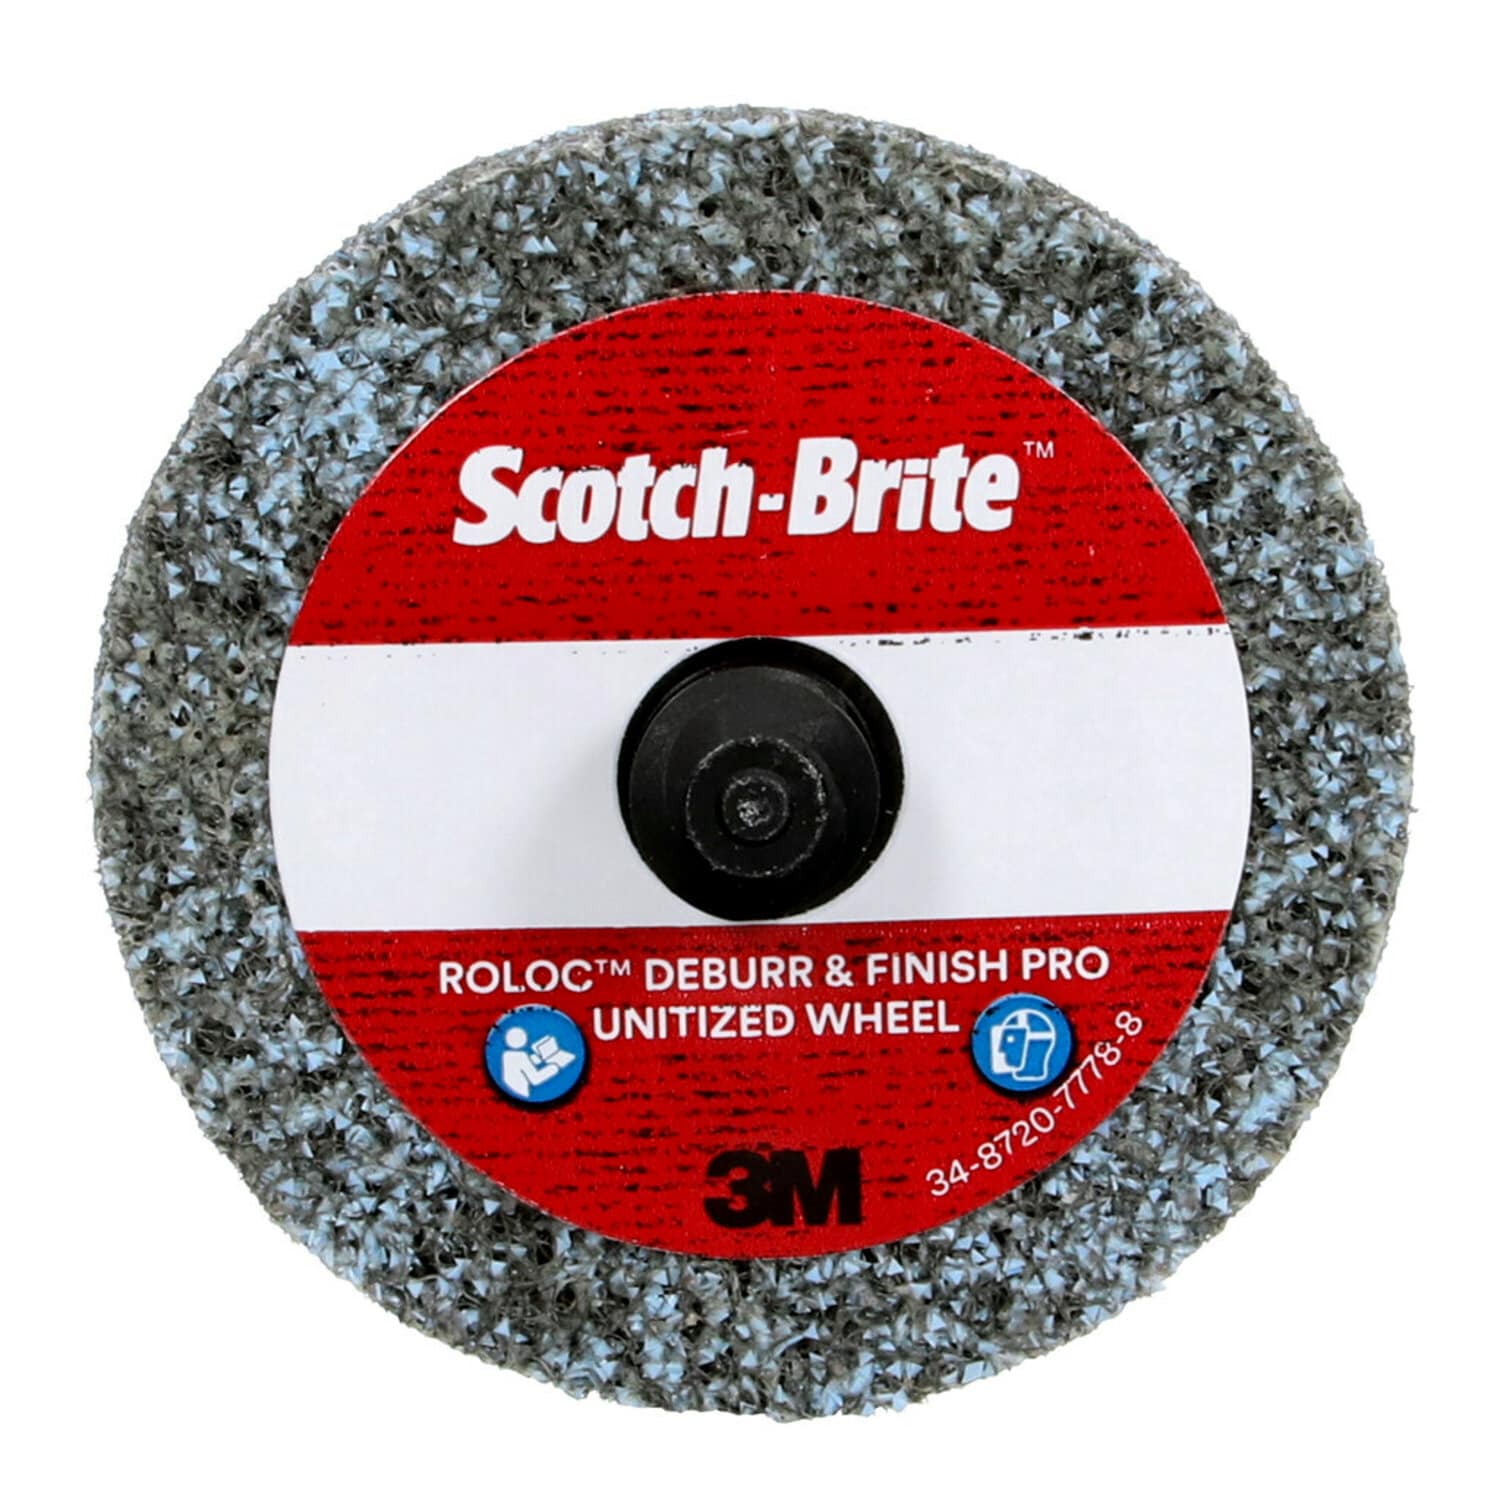 3M 580 scotchlite reflective vinyl tape black color 50 mm x 2 meters